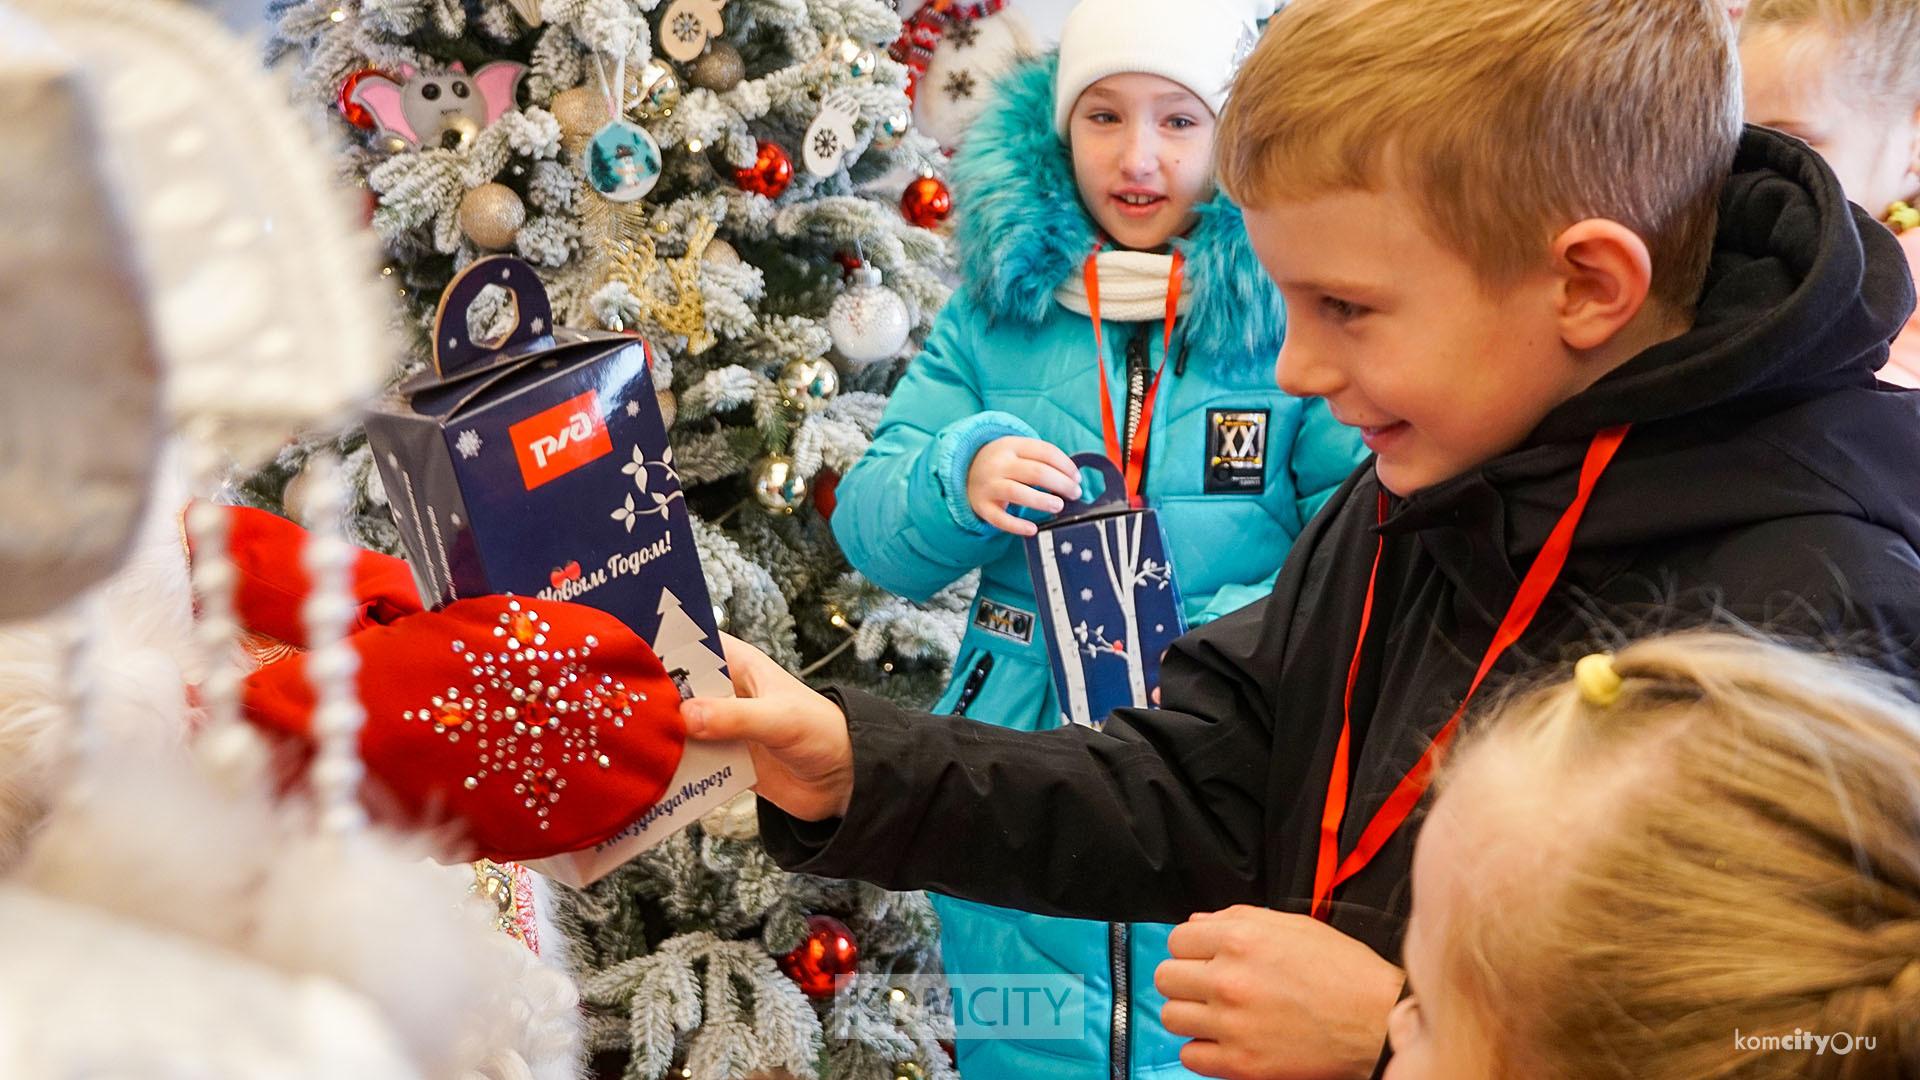  Комсомольчане побывали в передвижной резиденции Деда Мороза